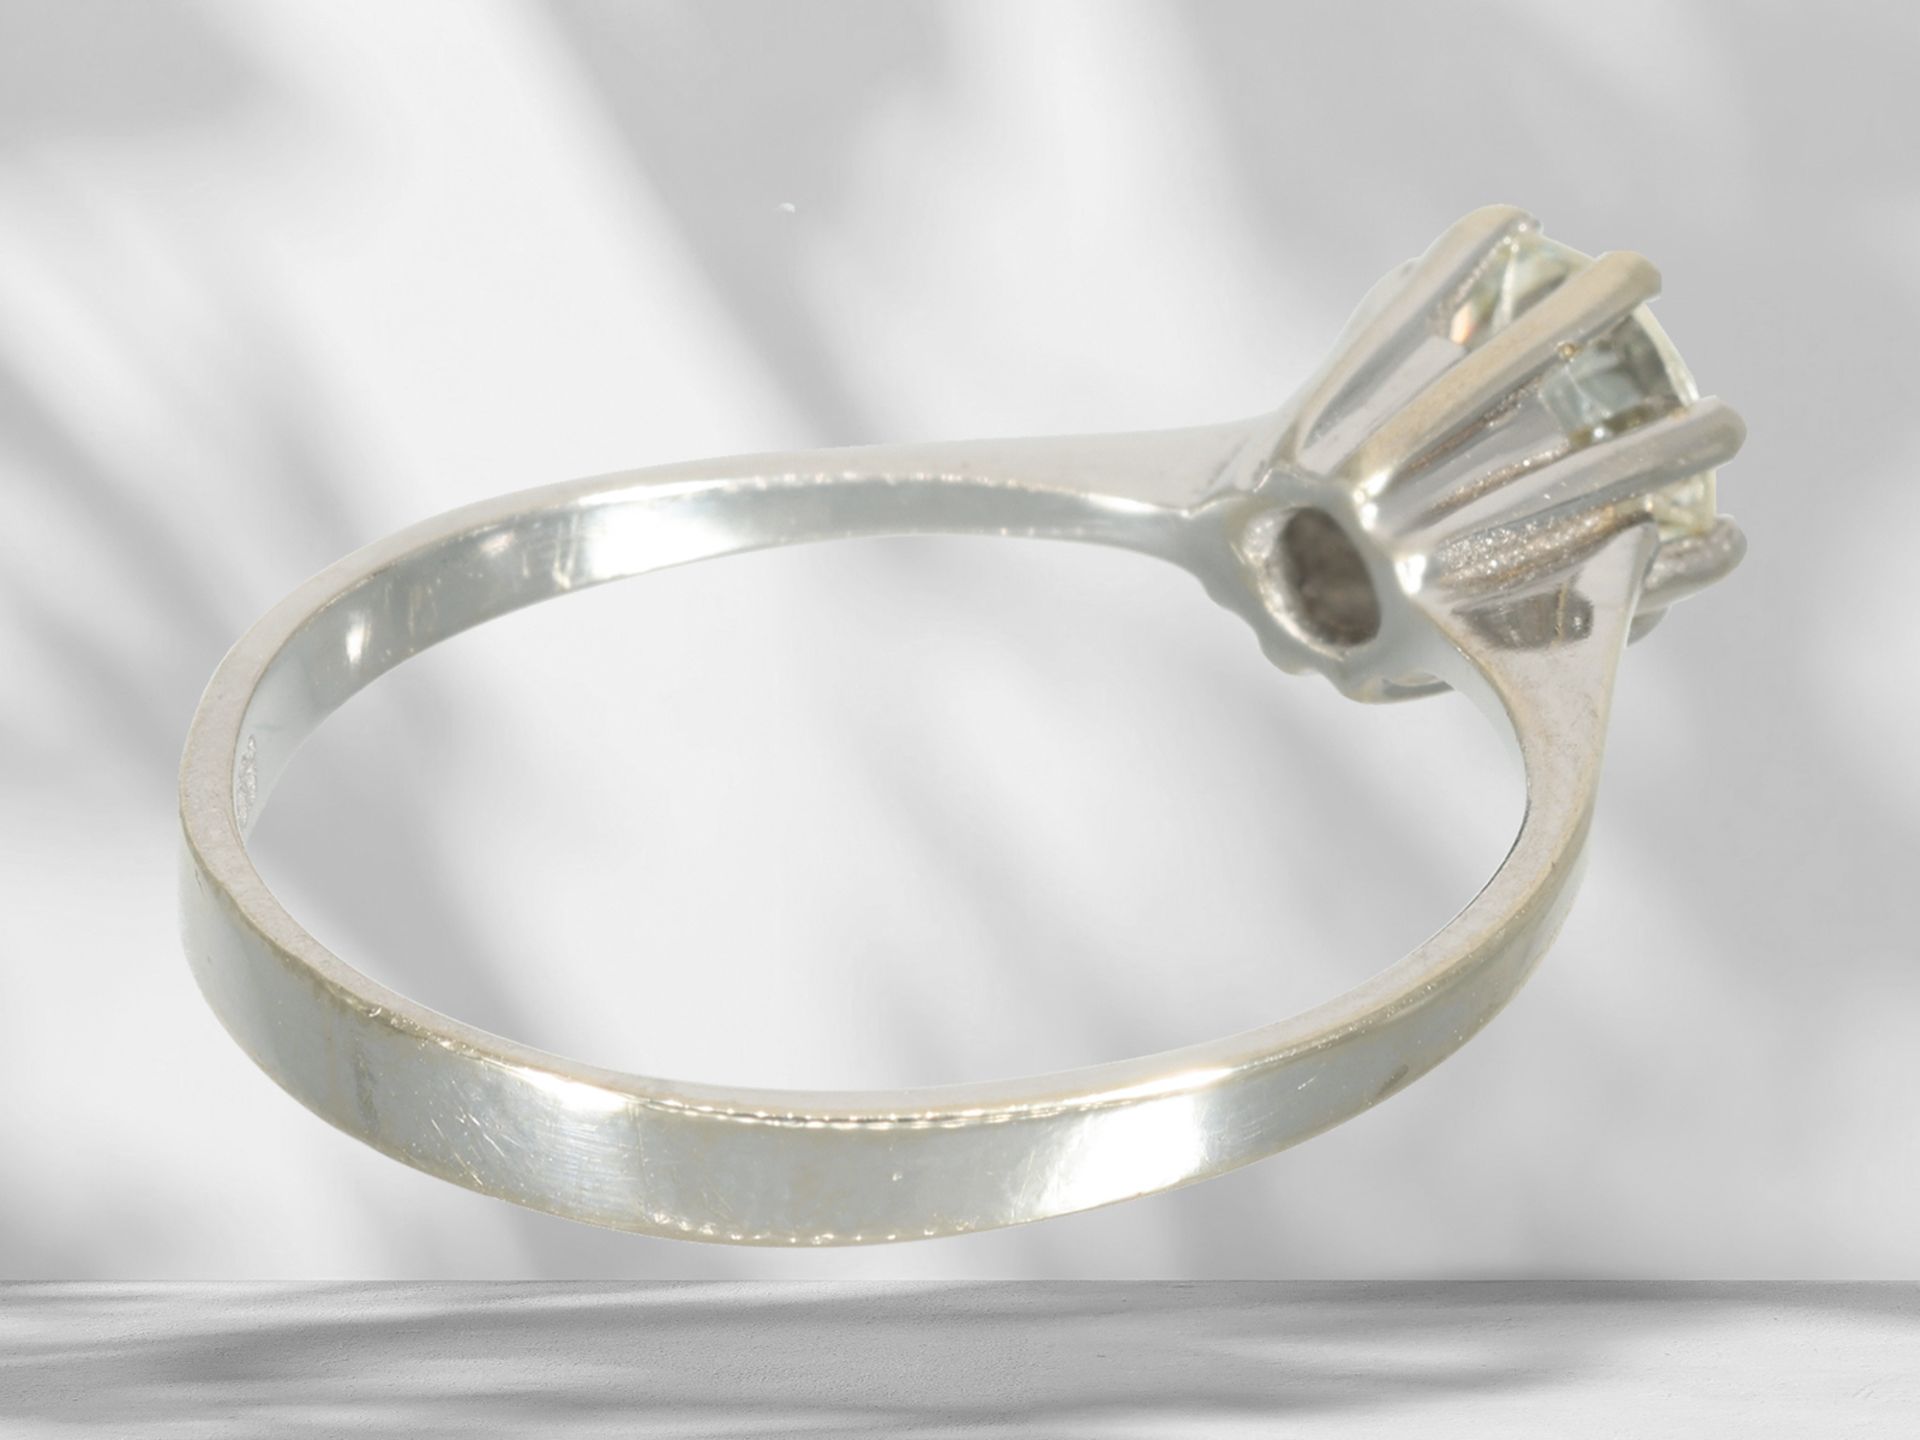 White gold solitaire/brilliant-cut diamond ring, beautiful brilliant-cut diamond of approx. 0.6ct - Image 4 of 4